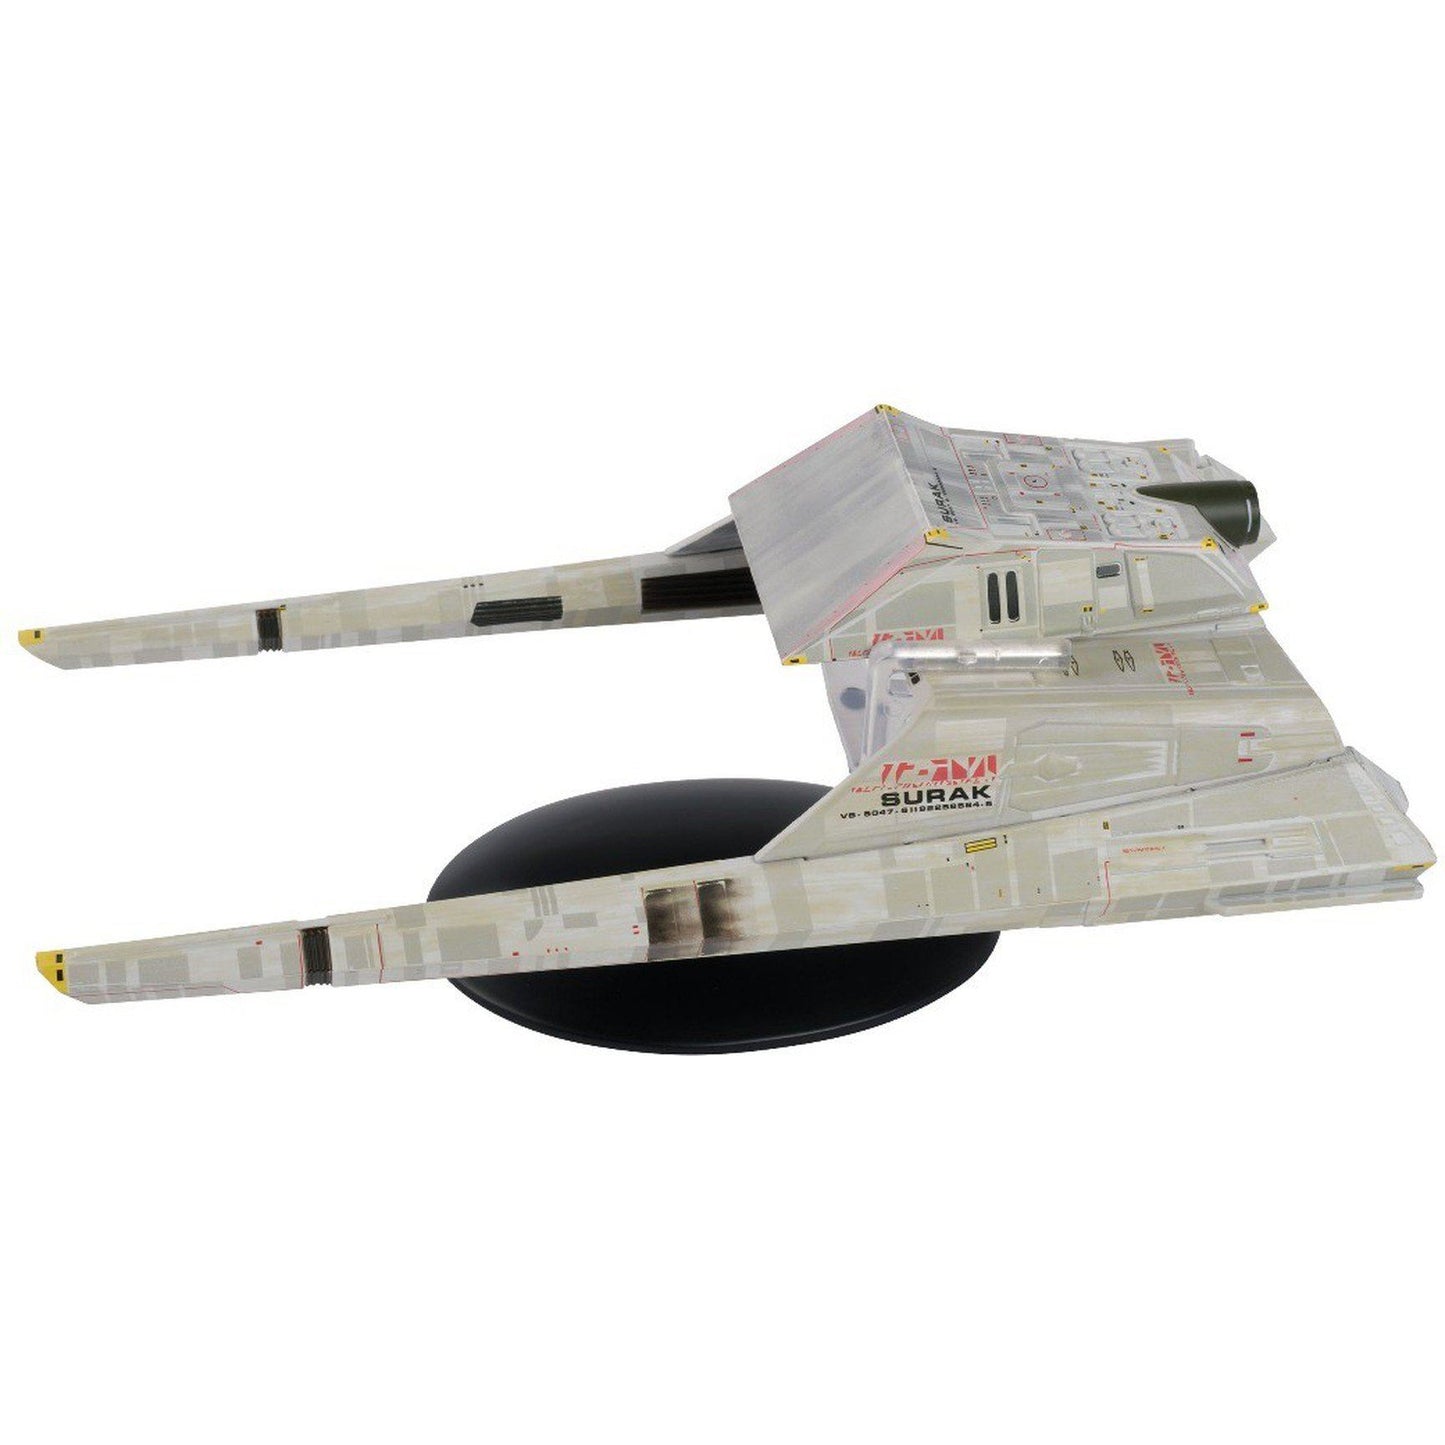 #21 Long Range Vulcan Shuttle Model Die Cast Ship Eaglemoss Star Trek